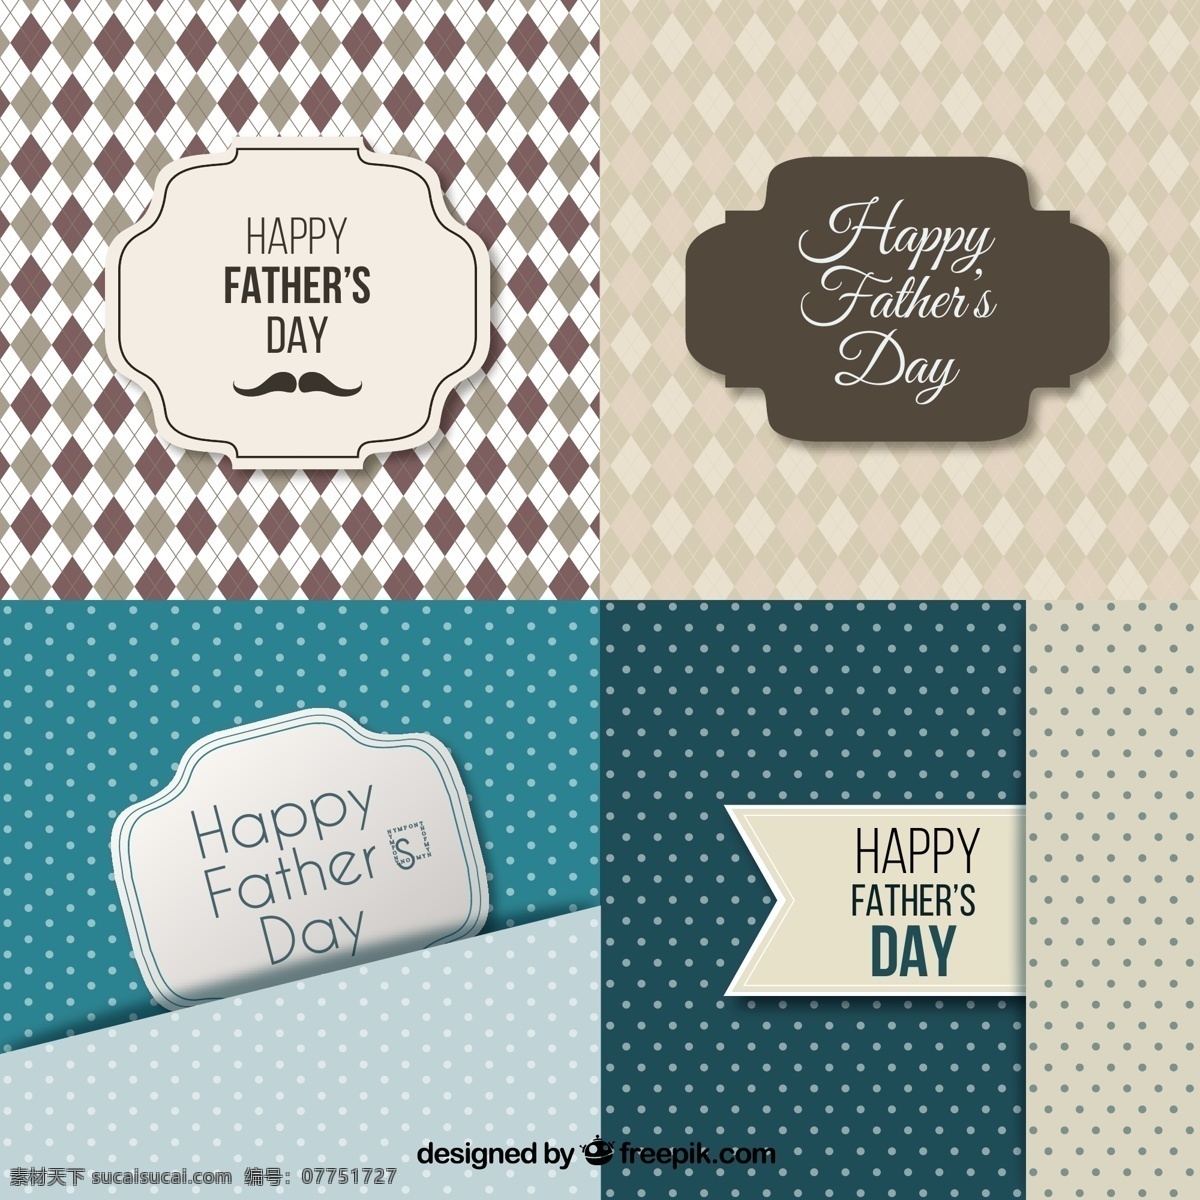 创意 父亲节 贺卡 矢量 菱形格 水玉点 标签 happy fathers day 背景 矢量图 白色